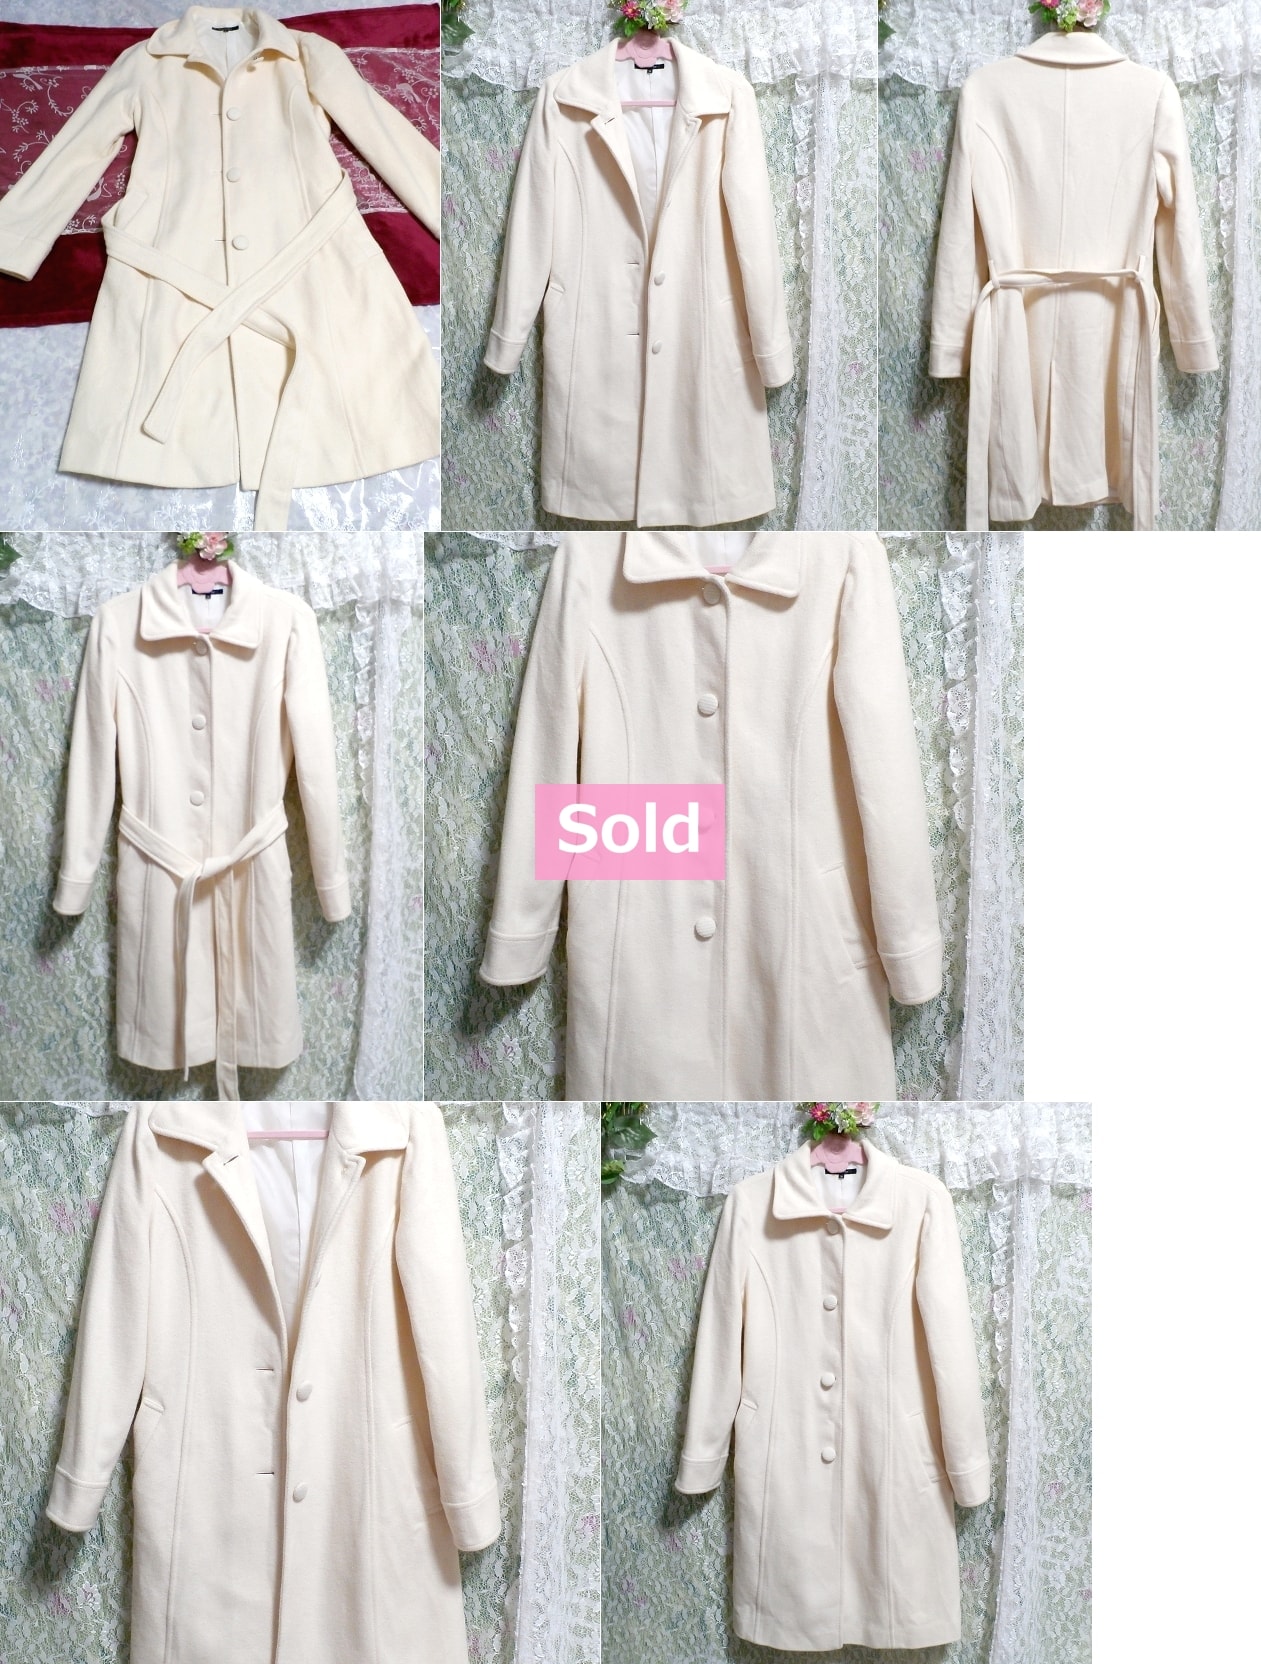 Abrigo largo angola de lana blanca floral / exterior, abrigo y abrigo en general y talla M